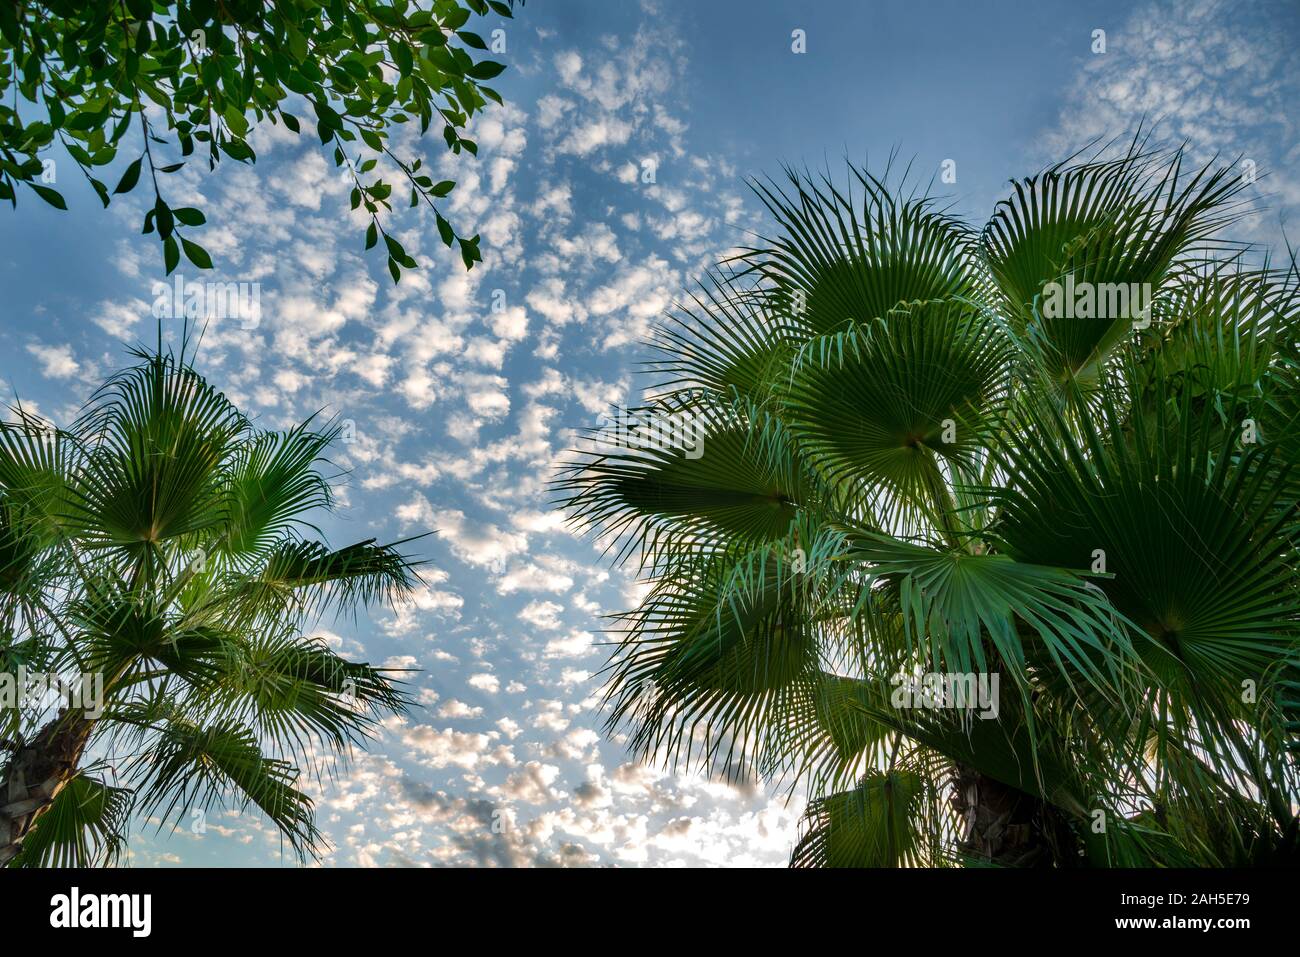 Pointes de feuilles d'un palmier tropical, vue partielle, ciel bleu et nuages blancs en arrière-plan Banque D'Images